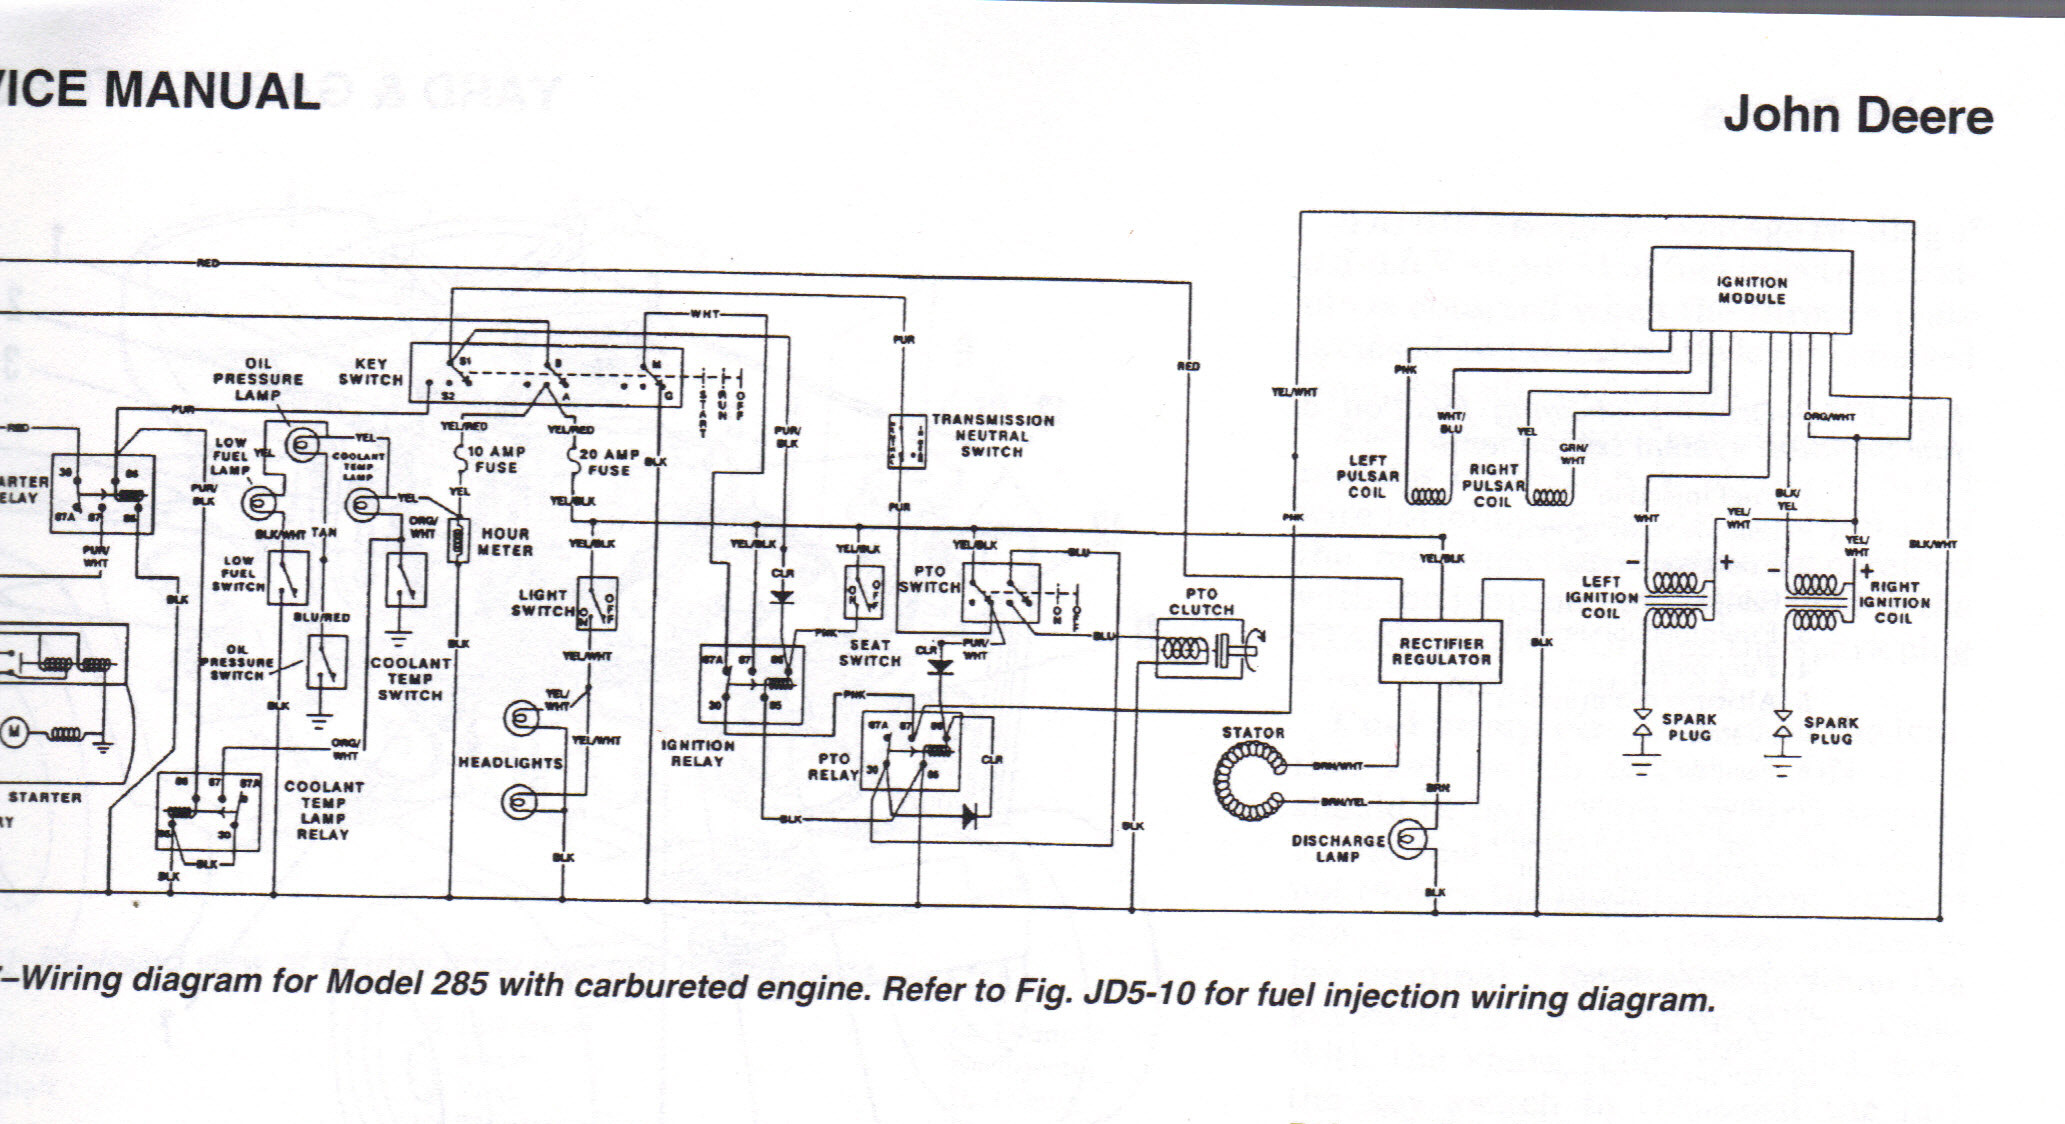 John Deere Garden Tractor Wiring Diagram Deere 325 17hp Deere Kawasaki Engine Manfactured 1995-98. I Am … Of John Deere Garden Tractor Wiring Diagram